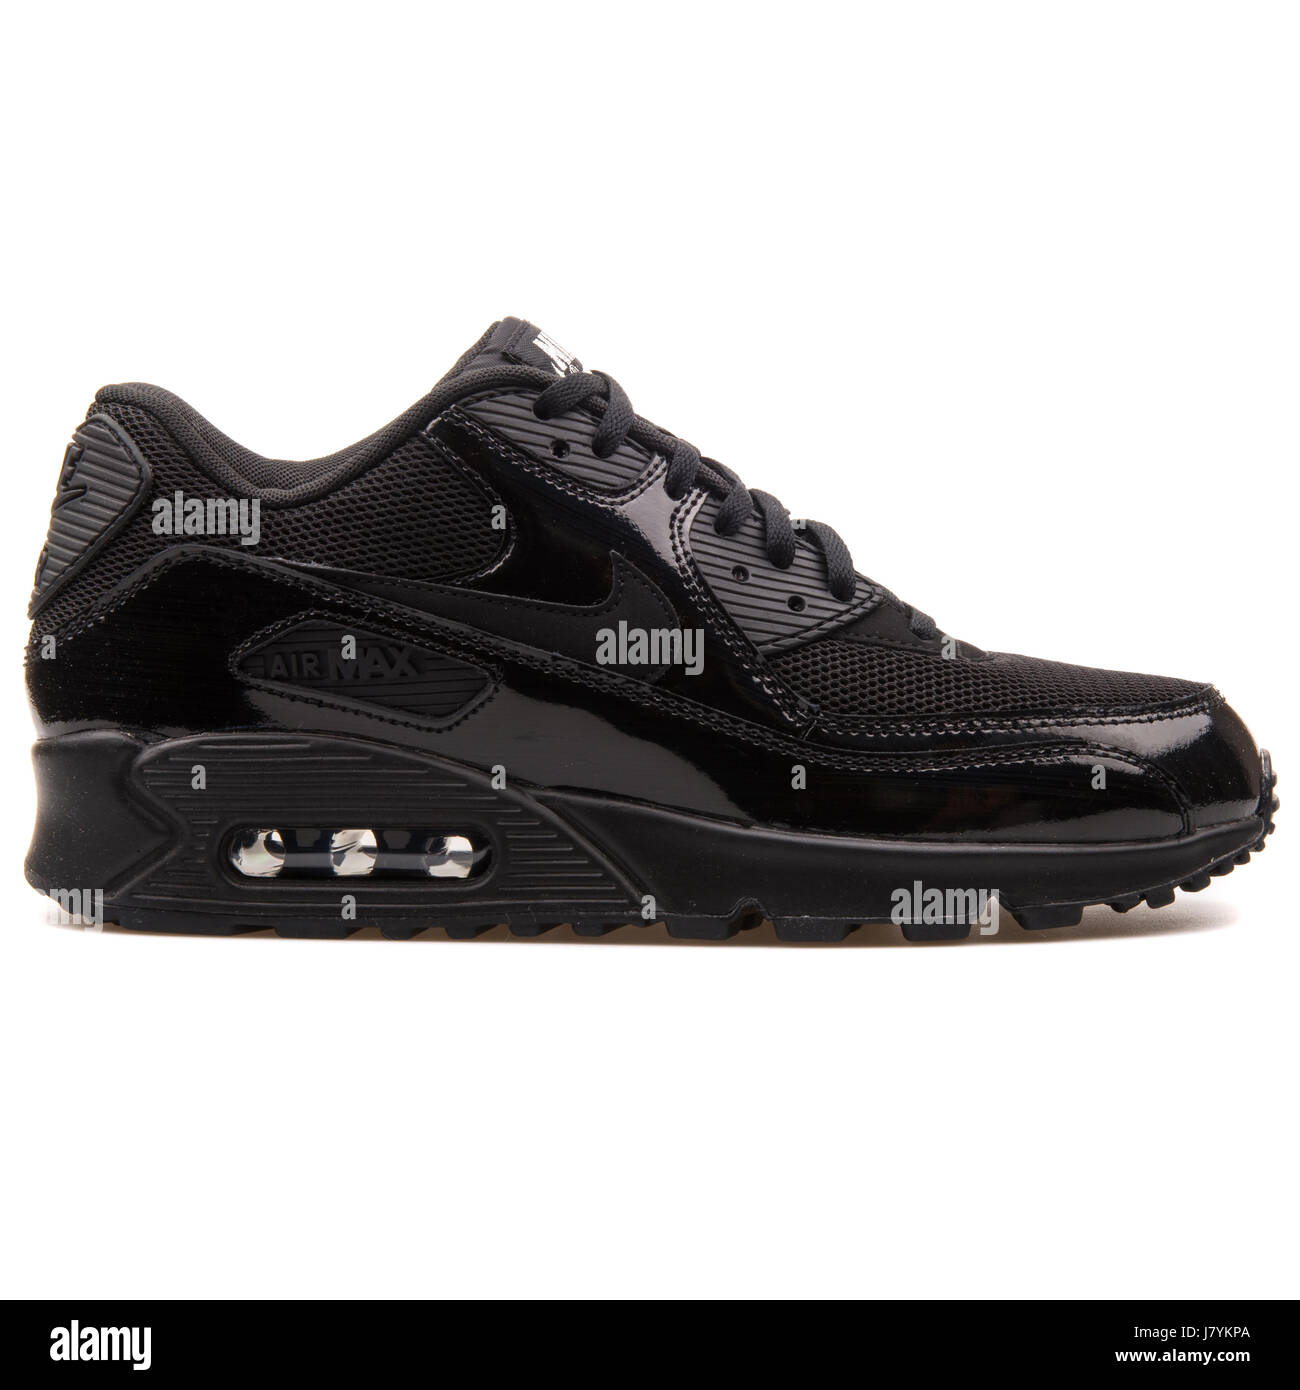 Nike Air Max 90 WMNS Premium negro brillante mujer Sneakers - 443817-002  Fotografía de stock - Alamy